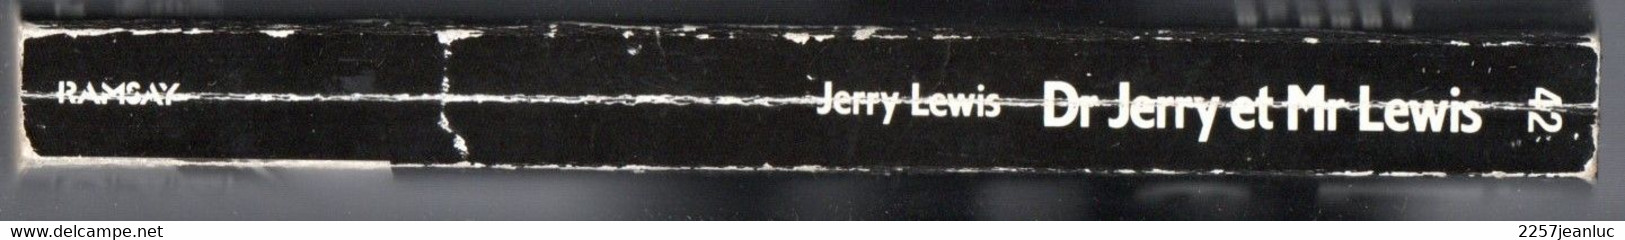 Jerry Lewis Dr Jerry Et Mr Lewis  Ramsay Poche Cinéma De  1987 - Films